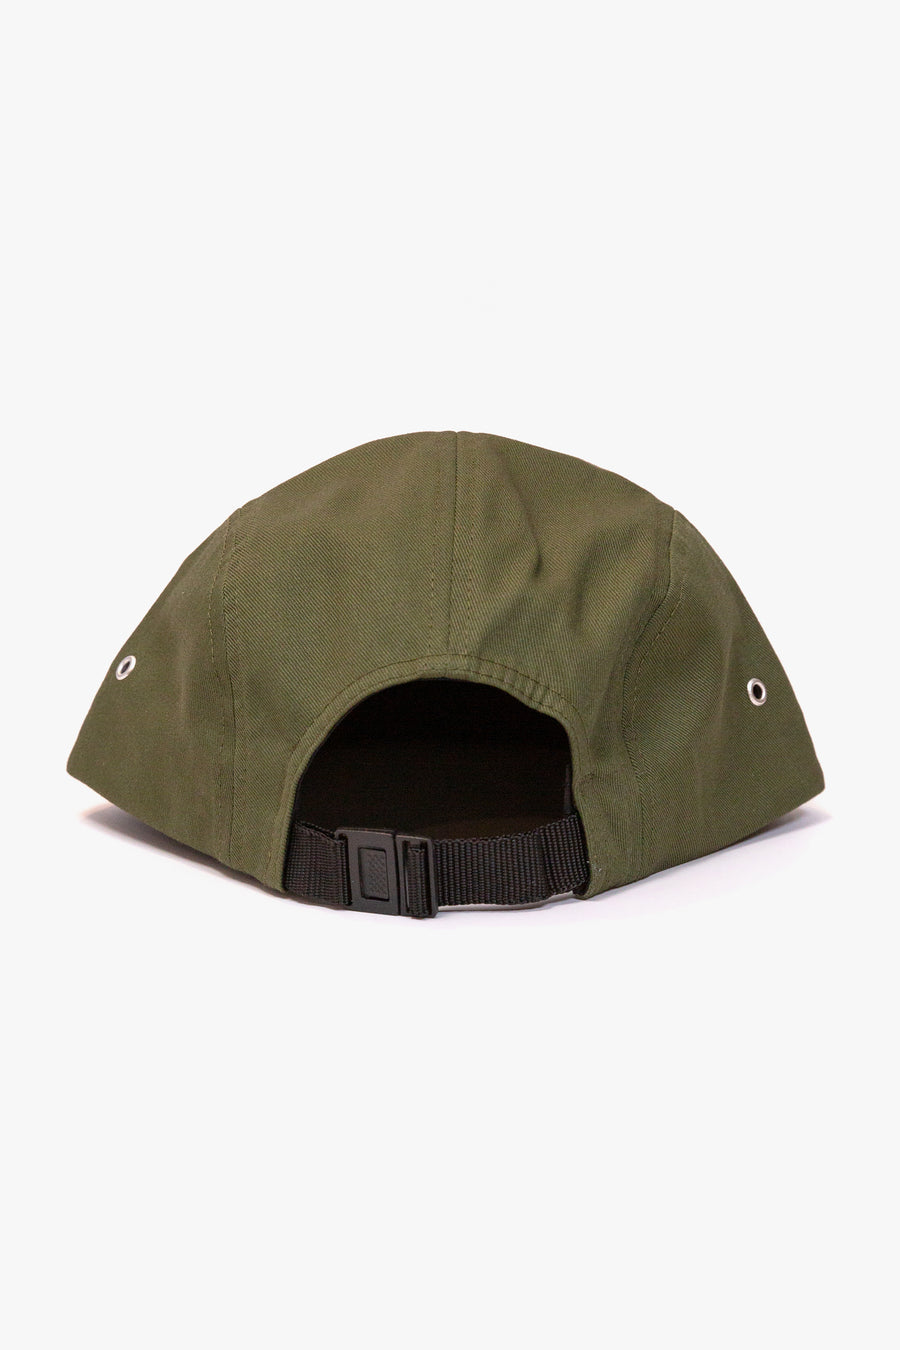 Pro Label Patch Camper Hat